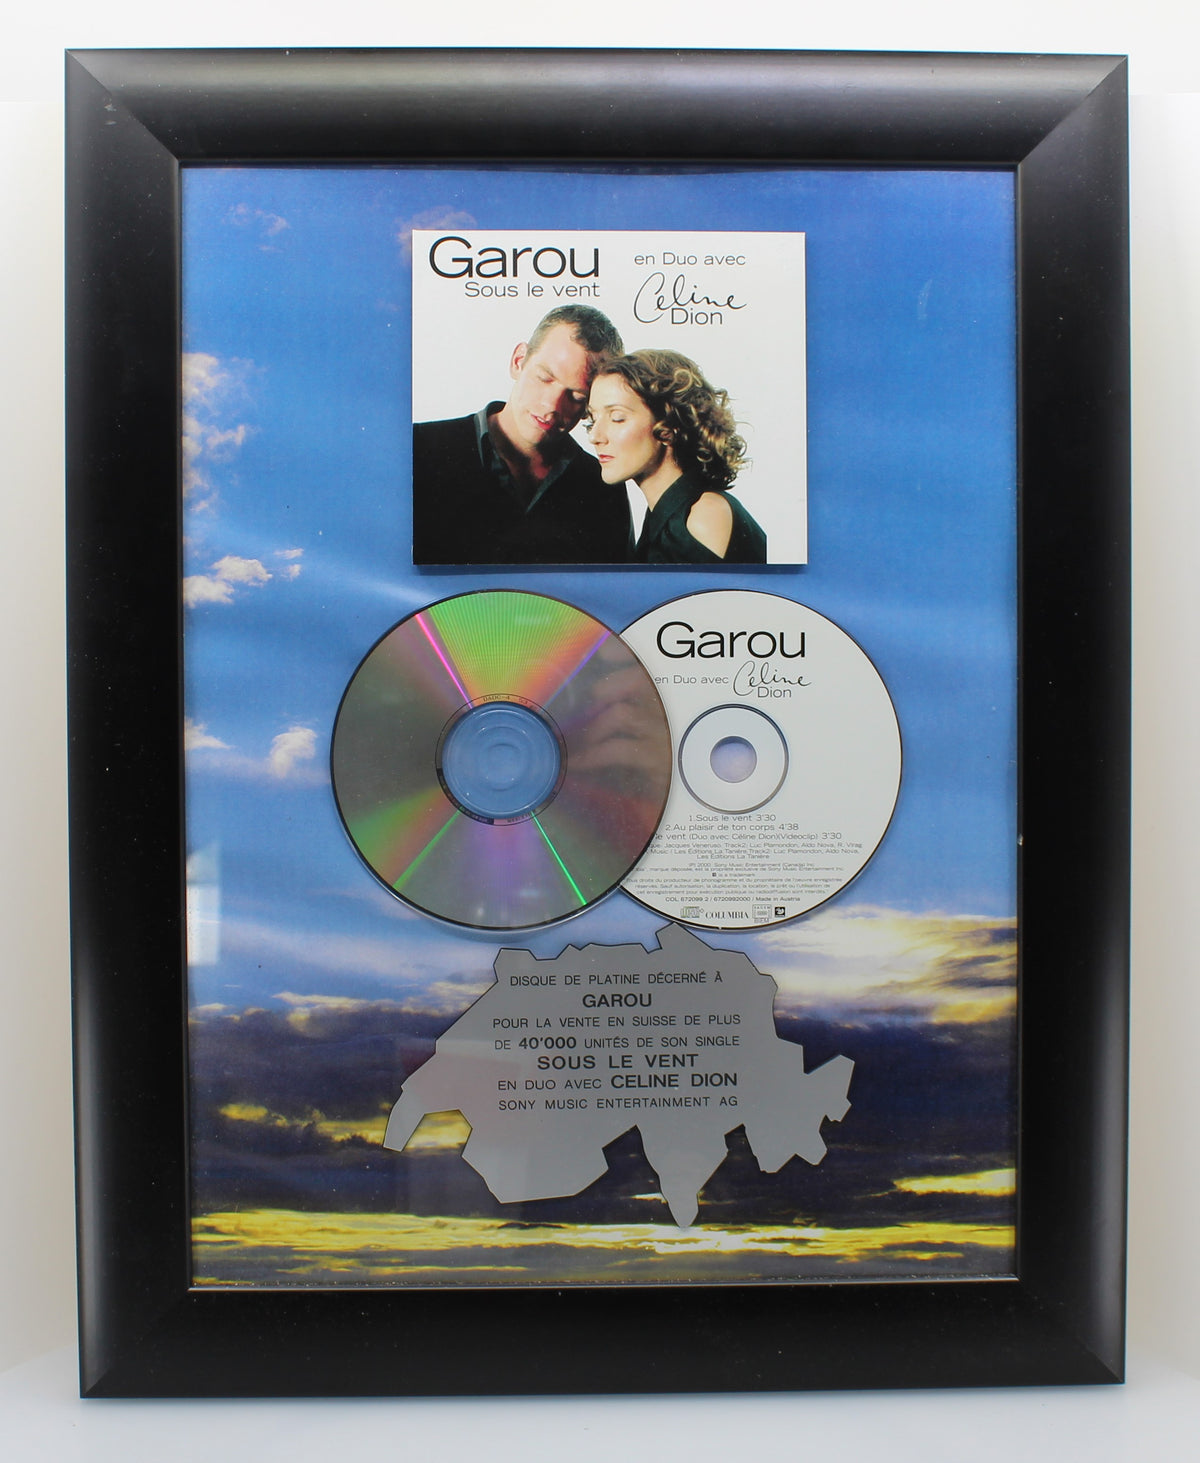 Garou Et Duo Et Céline Dion ‎– Sous Le Vent, Platin Award, Switzerland 2000